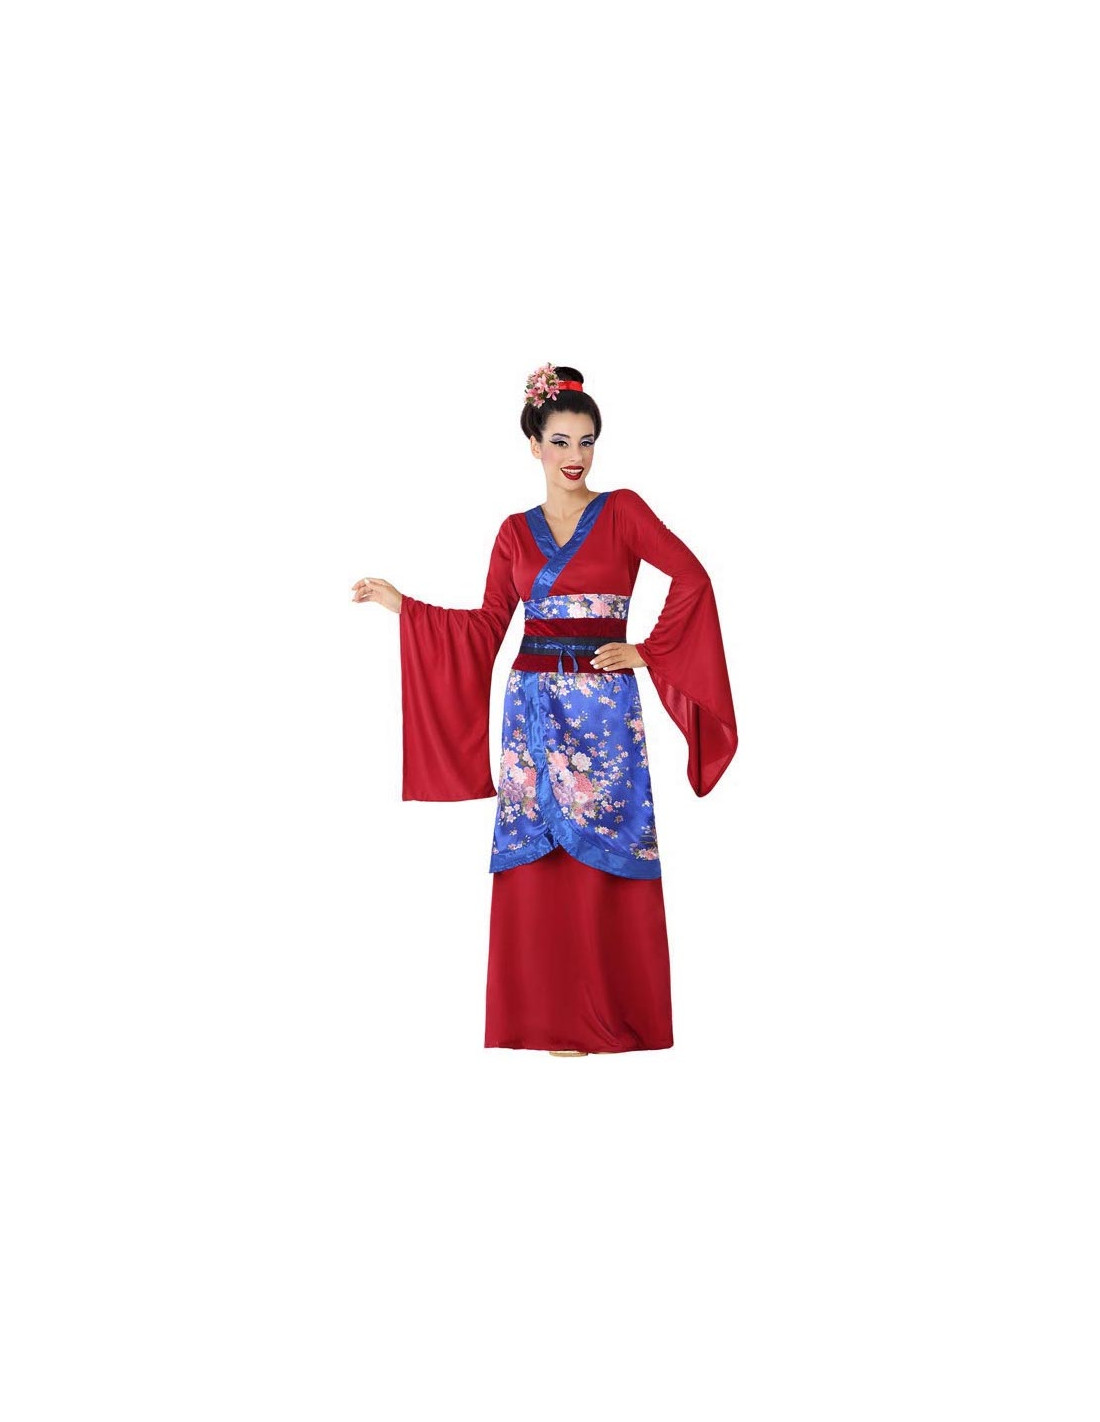 Disfraz geisha mujer: Disfraces adultos,y disfraces originales